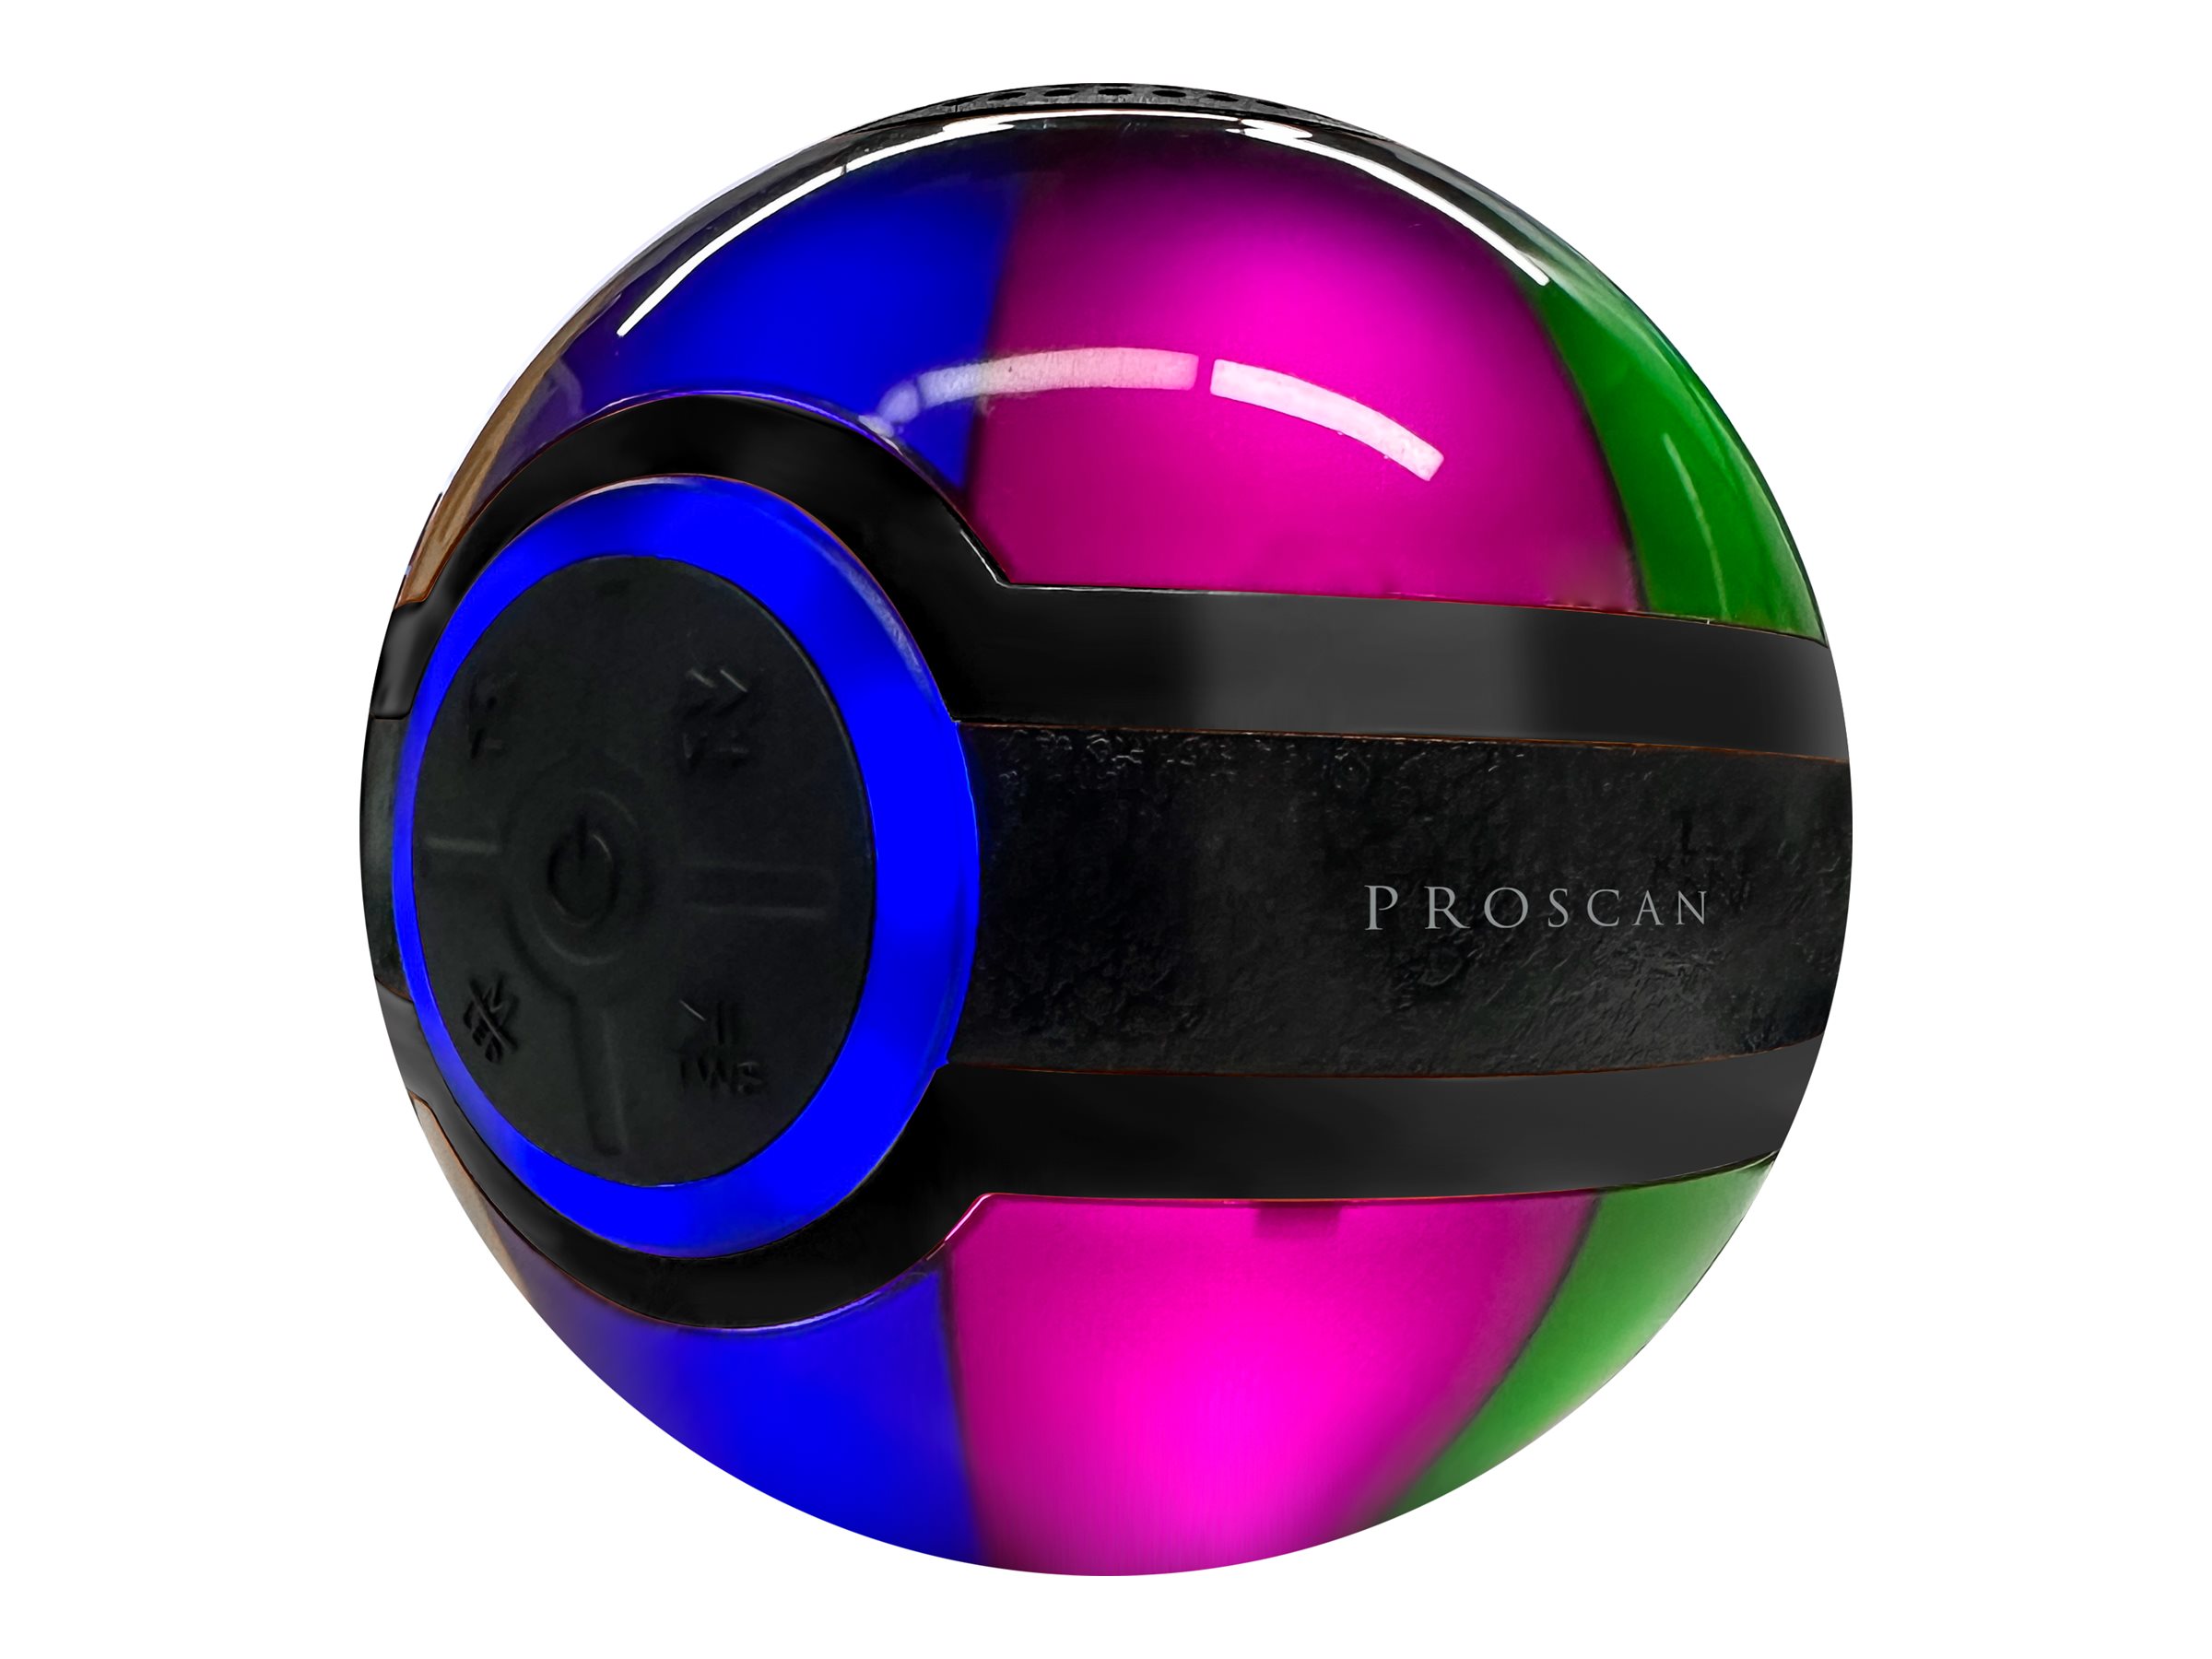 PROSCAN PSP1212 Bluetooth Speaker - PSP1212